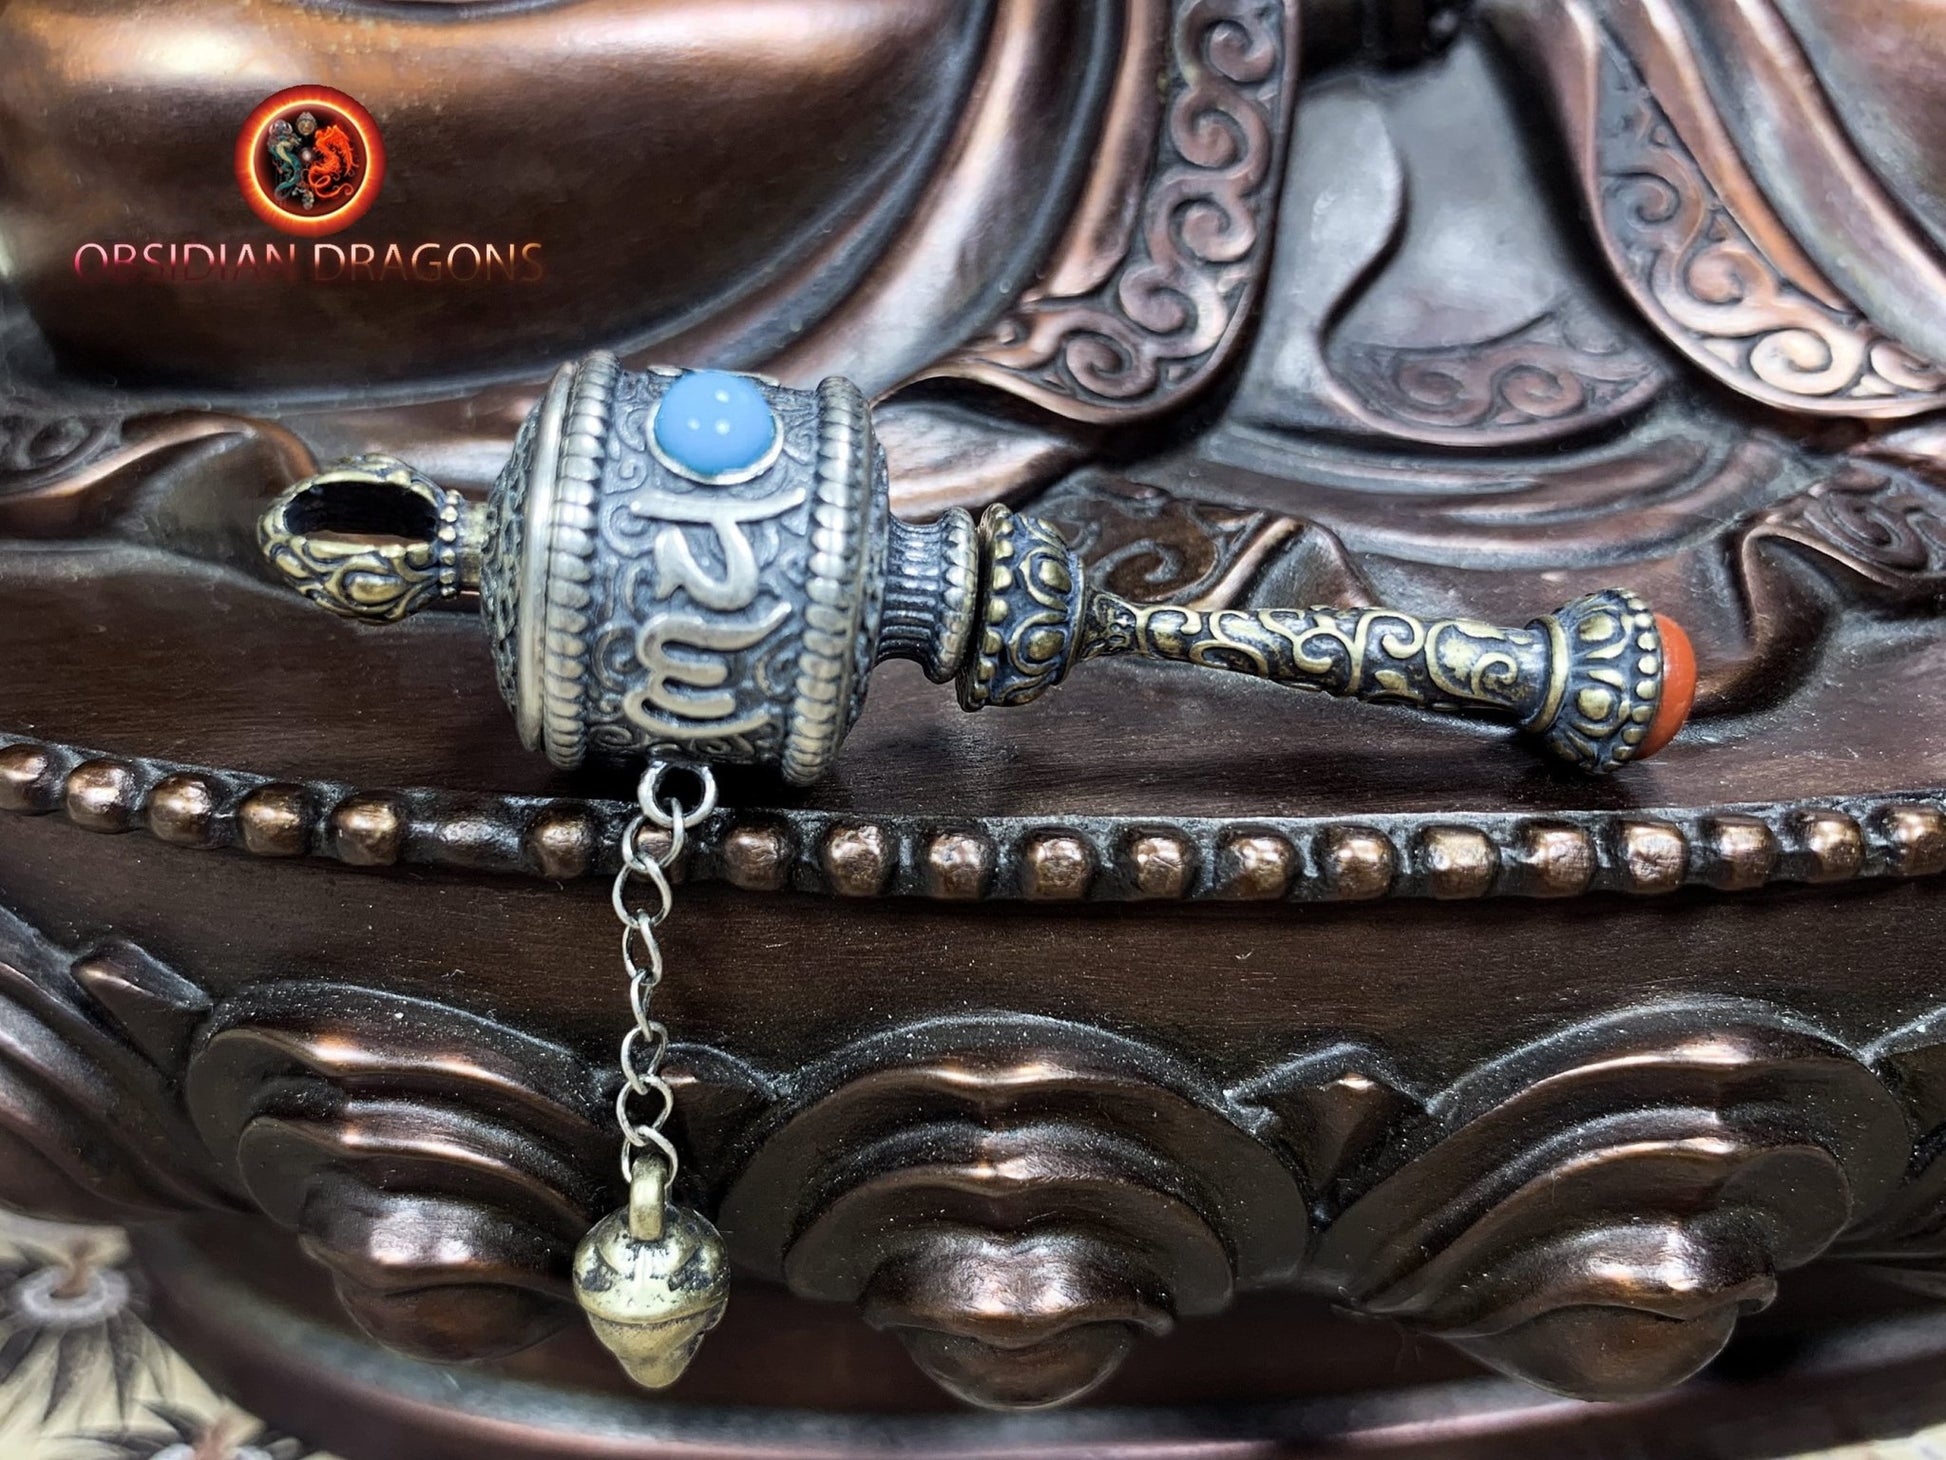 Pendentif tibetain moulin a prière, bouddhisme tibetain vajrayana. Argent 925 poinçonné - obsidian dragon